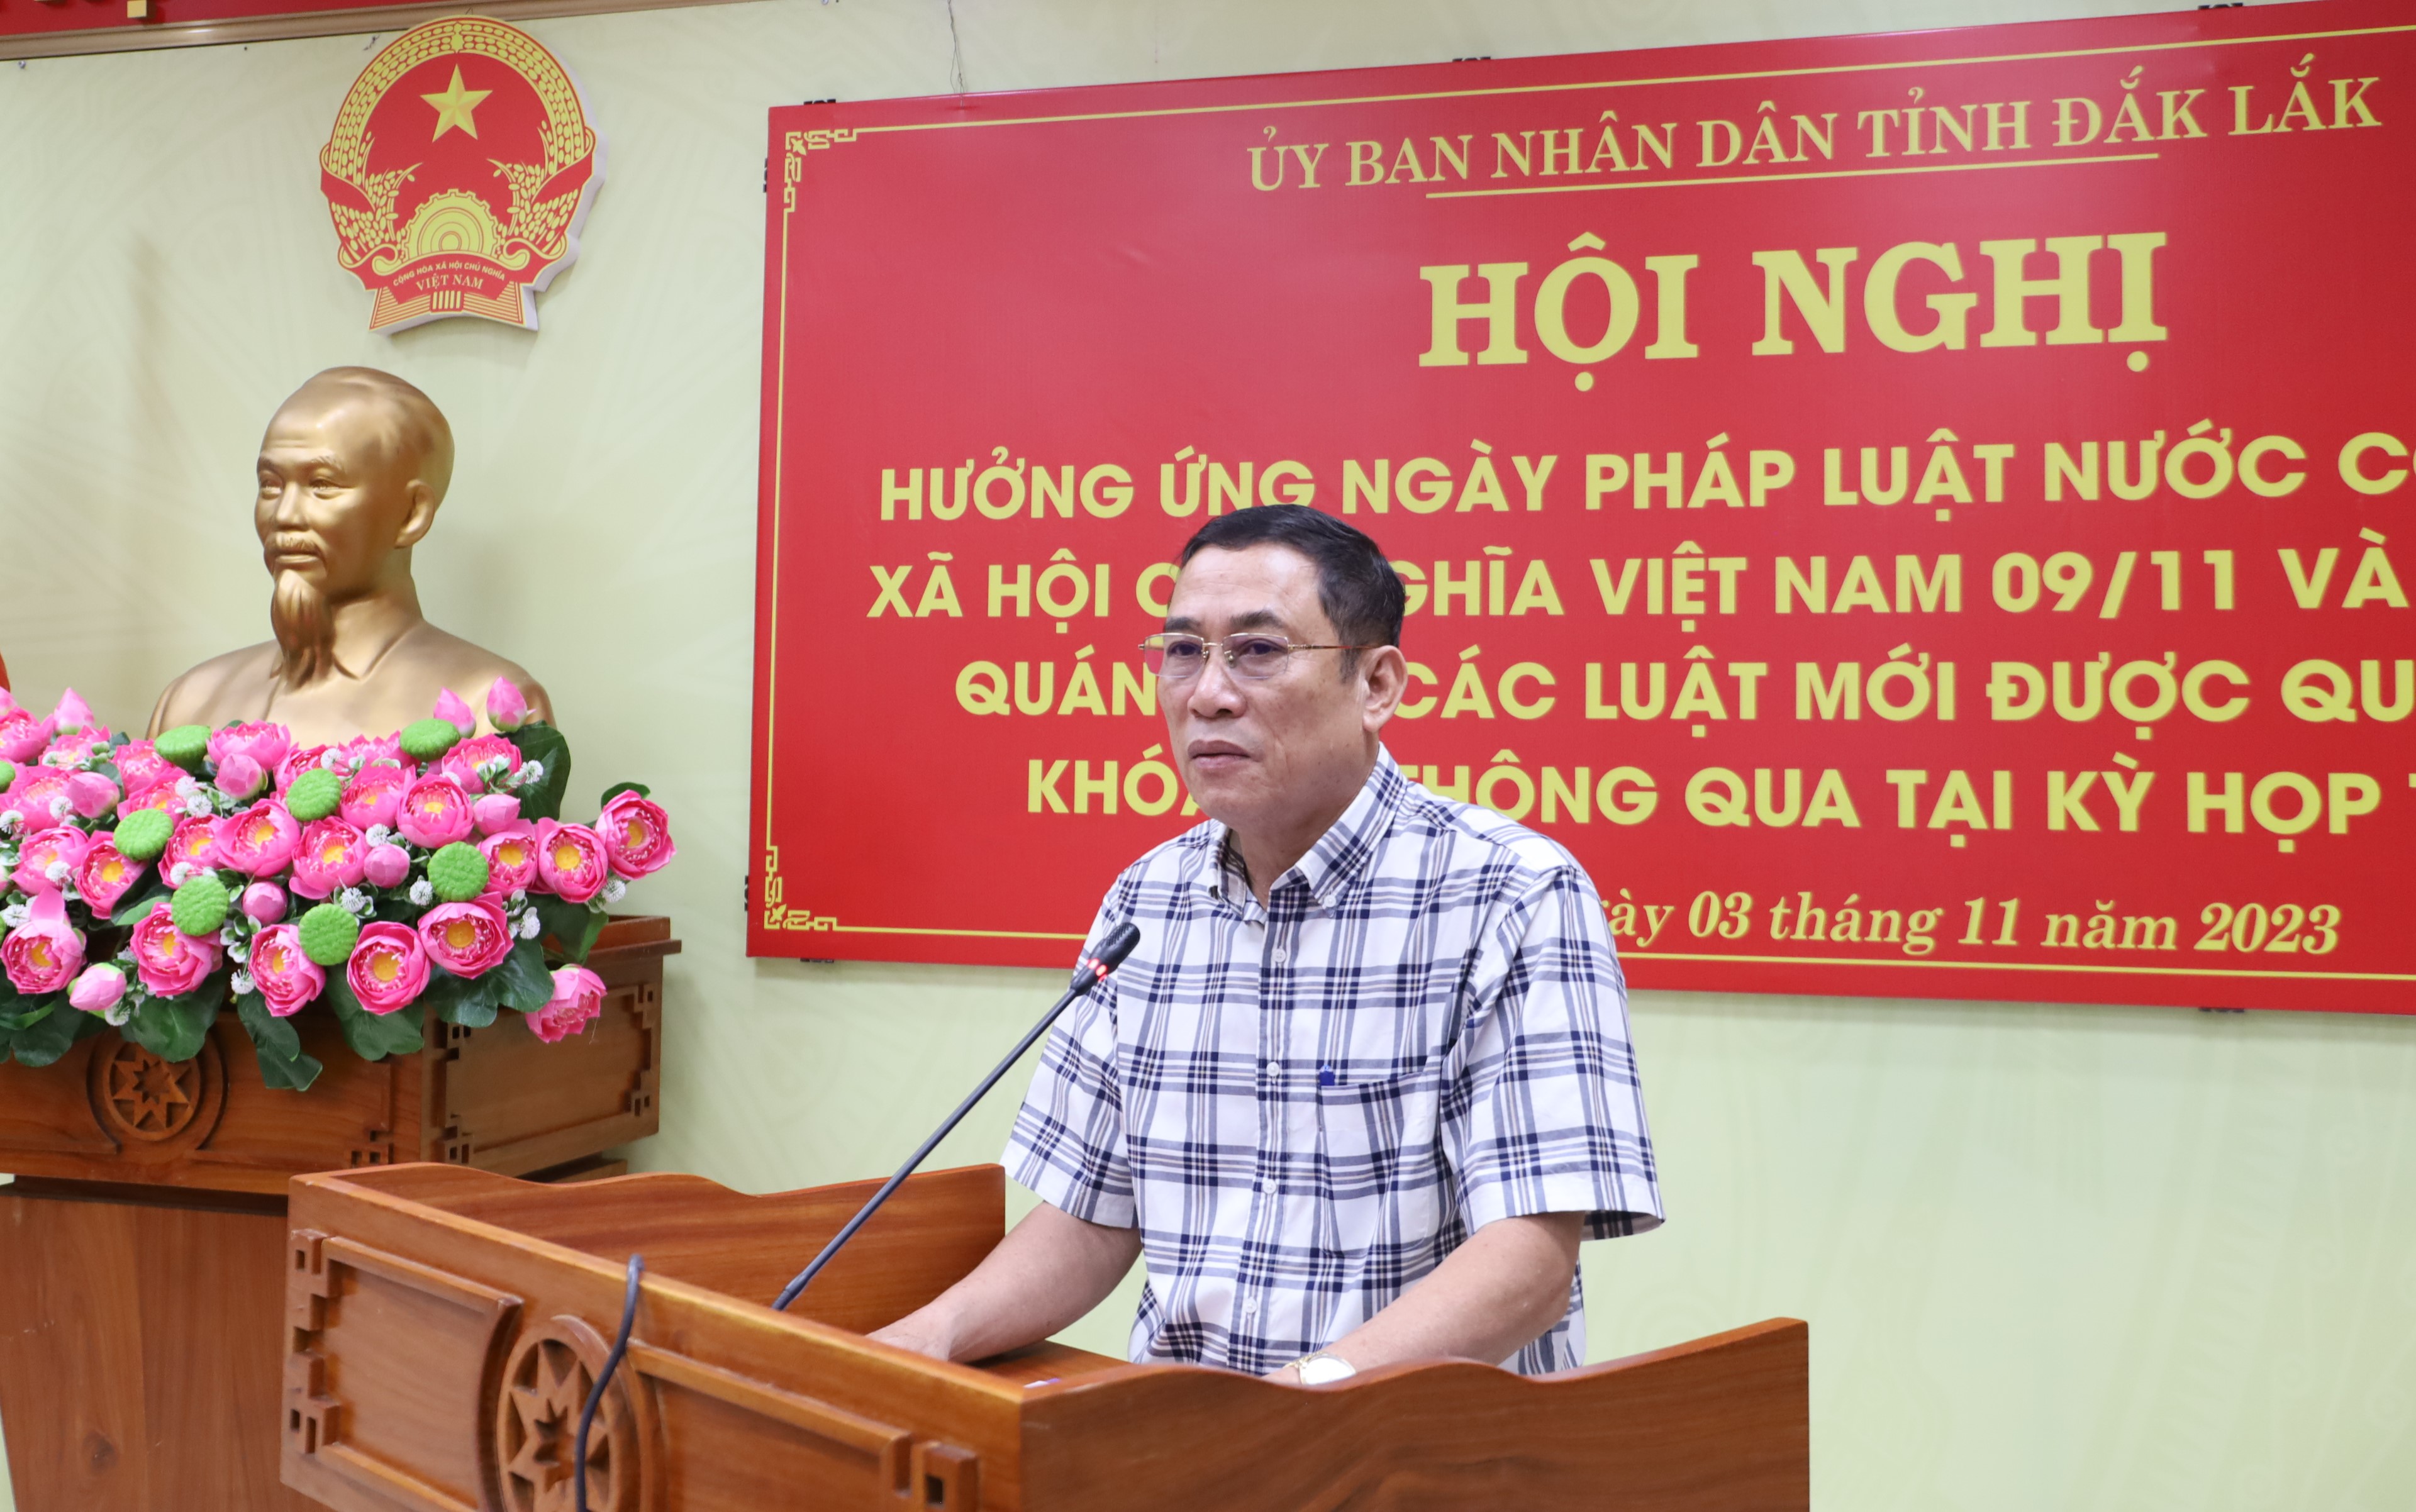 Hưởng ứng Ngày Pháp luật nước Cộng hòa xã hội chủ nghĩa Việt Nam năm 2023